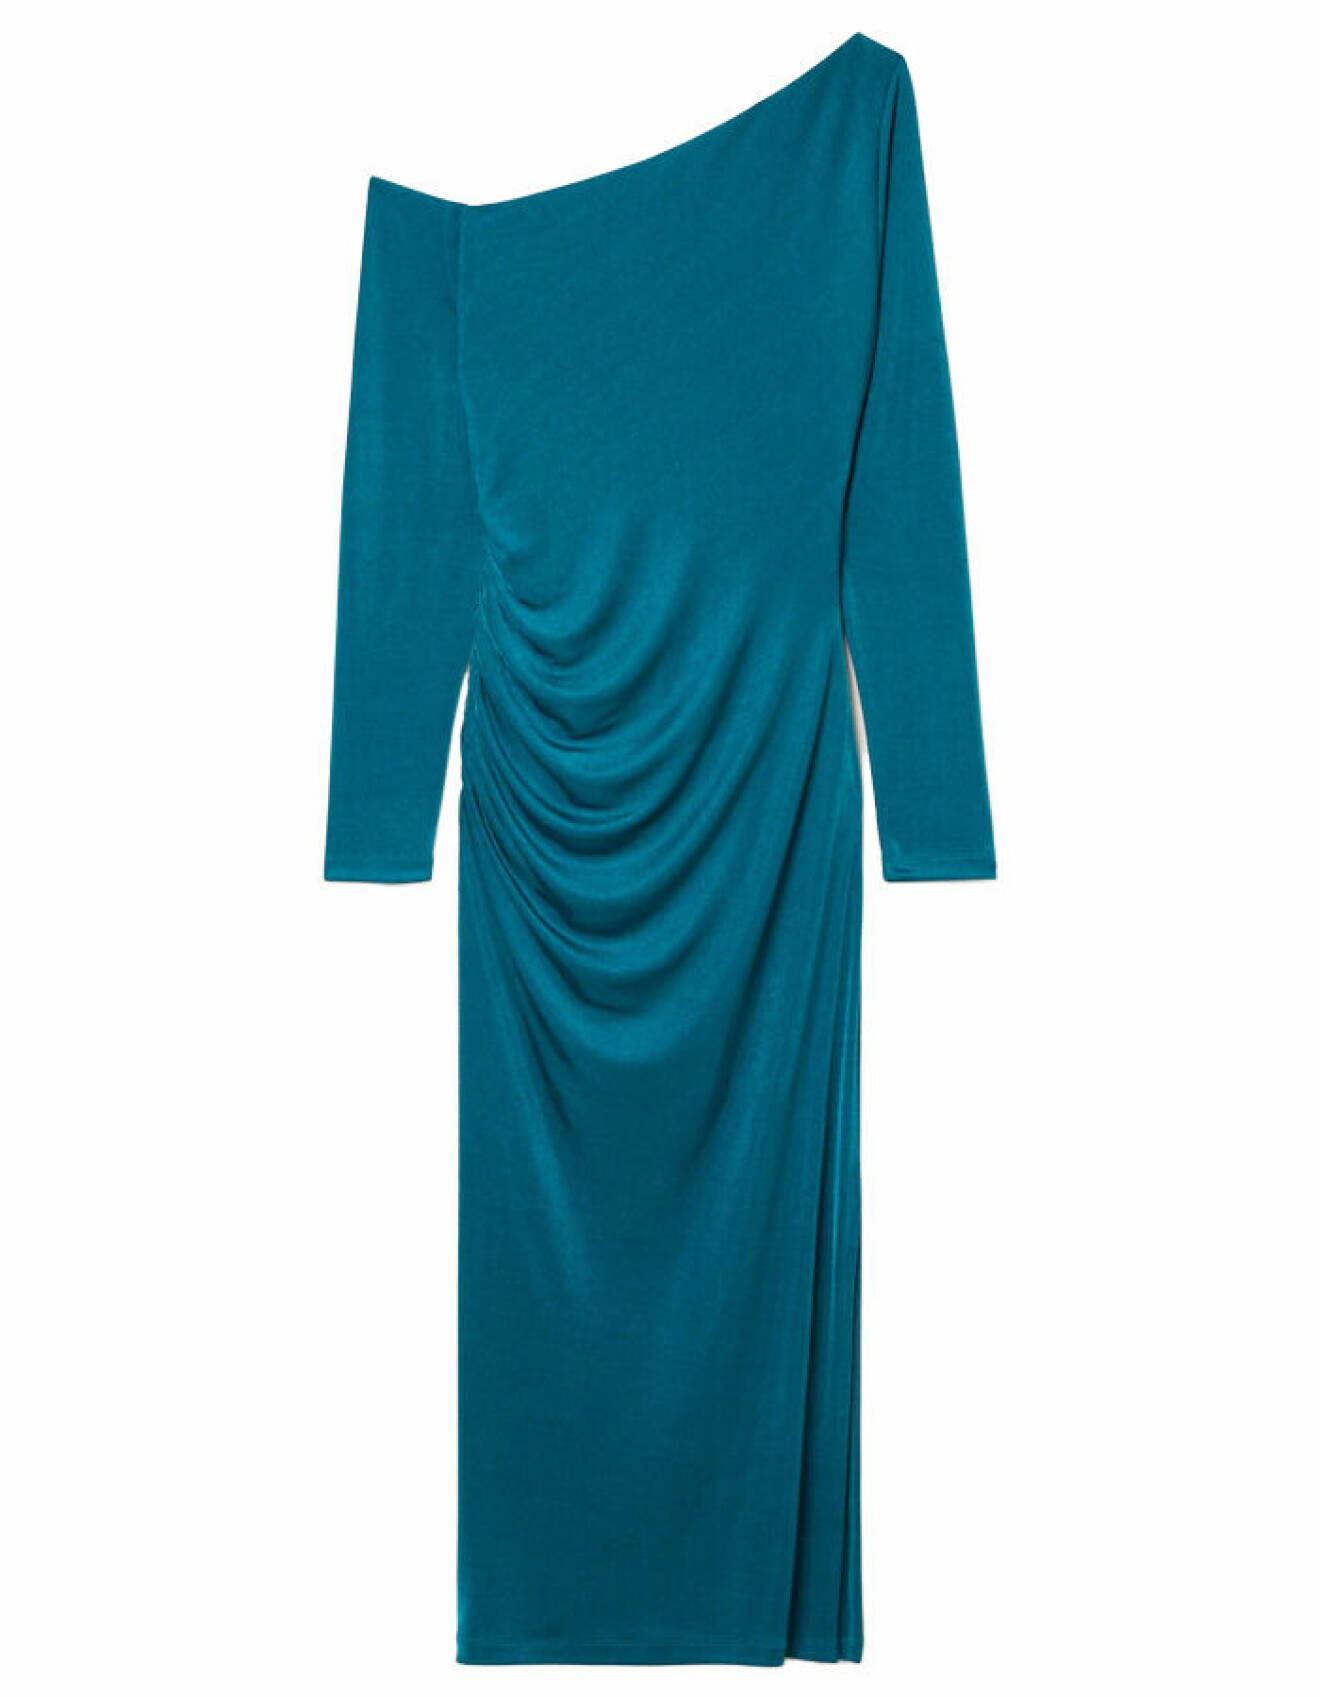 blå klänning av skimrande trikå, kroppsnära passform och one shoulder från stockh lm studio